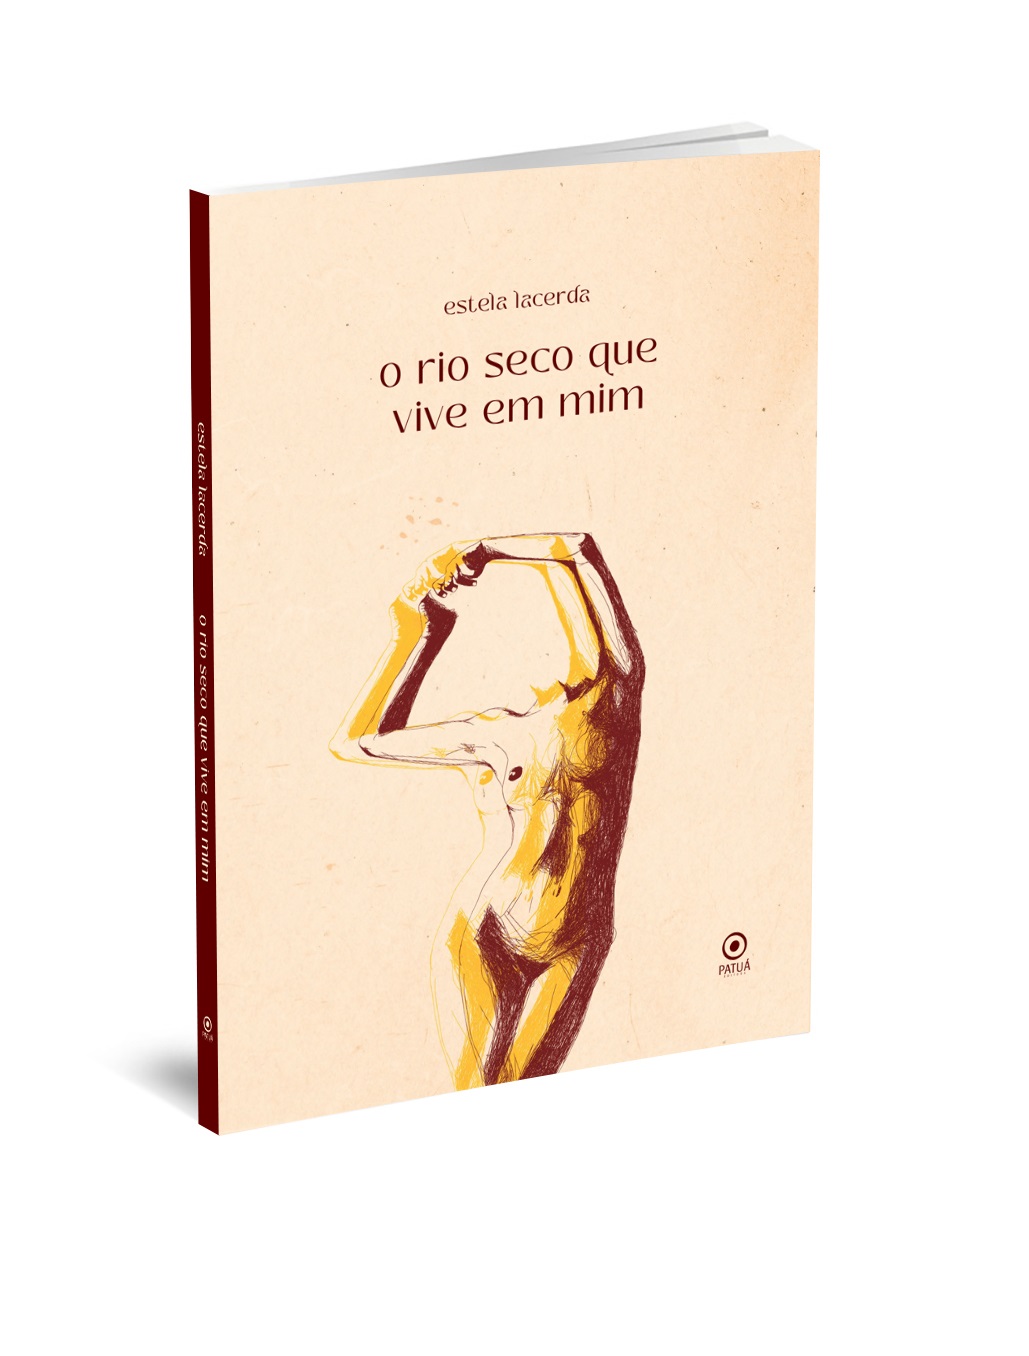 Estela livro - Livro de poemas 'O Rio seco que vive em mim' devaneia os ritos dos rios nas memórias das palavras | Fernando Andrade